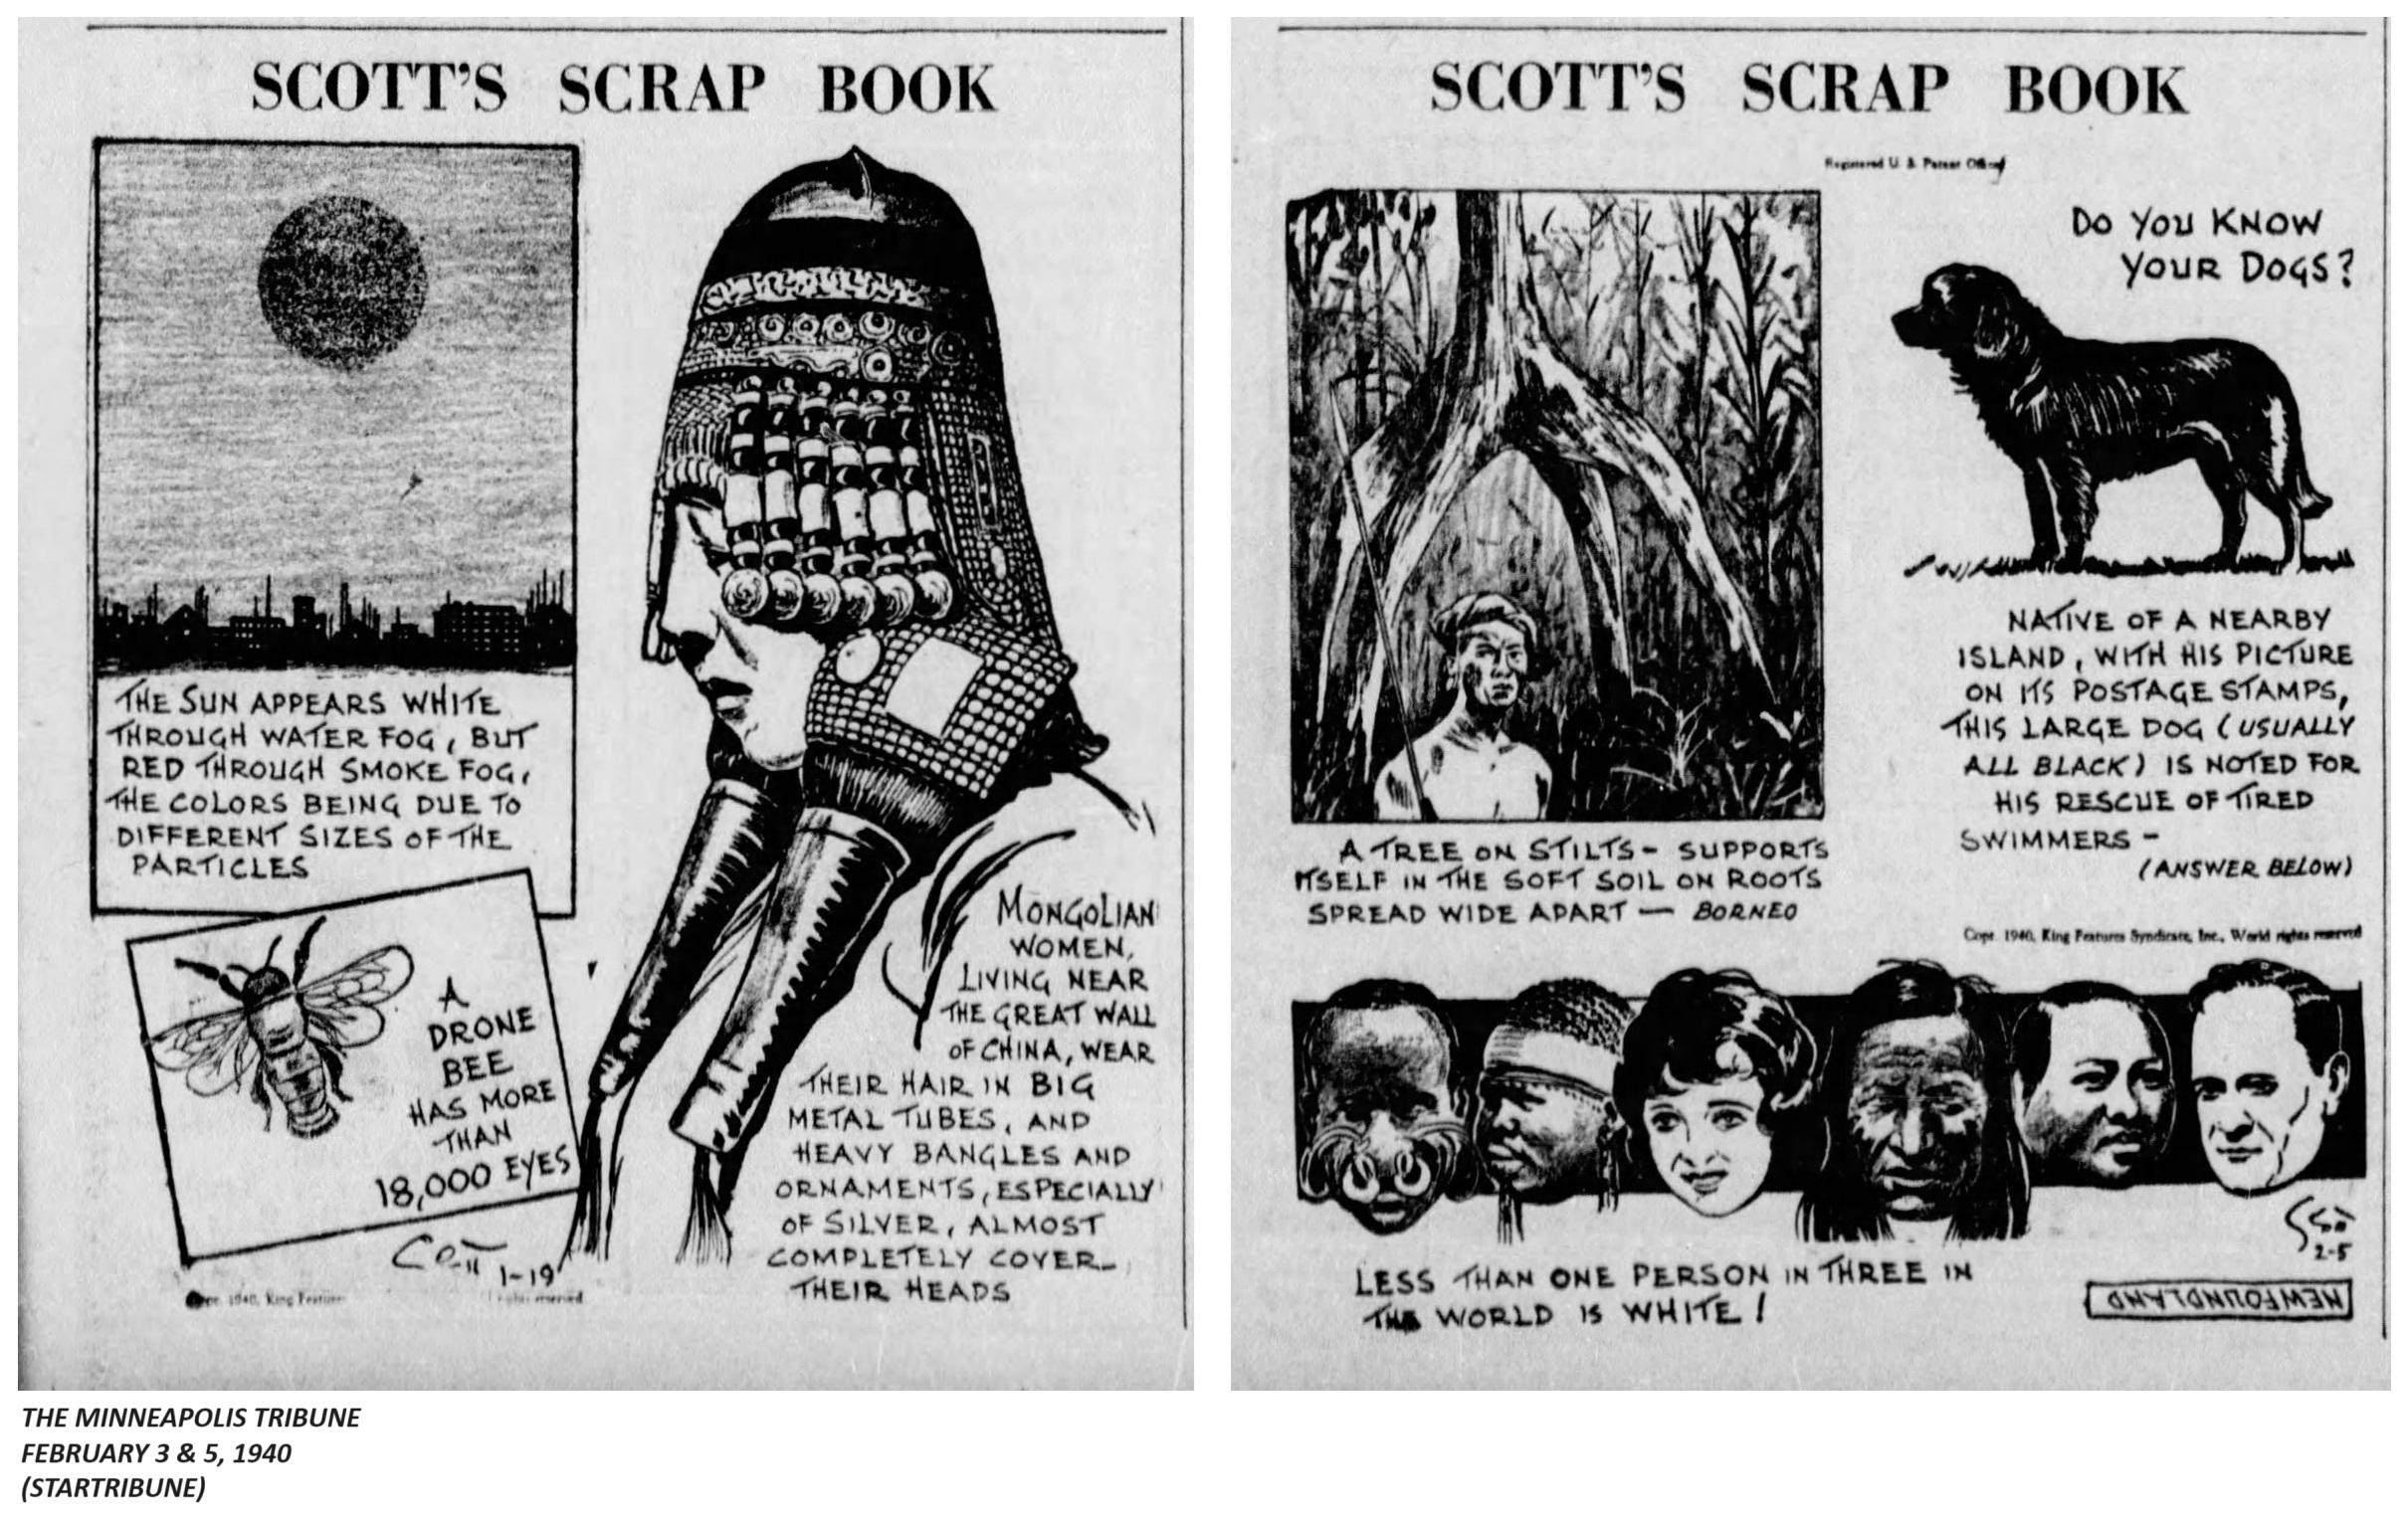 1940. SCOTT'S SCRAP BOOK 3.jpeg